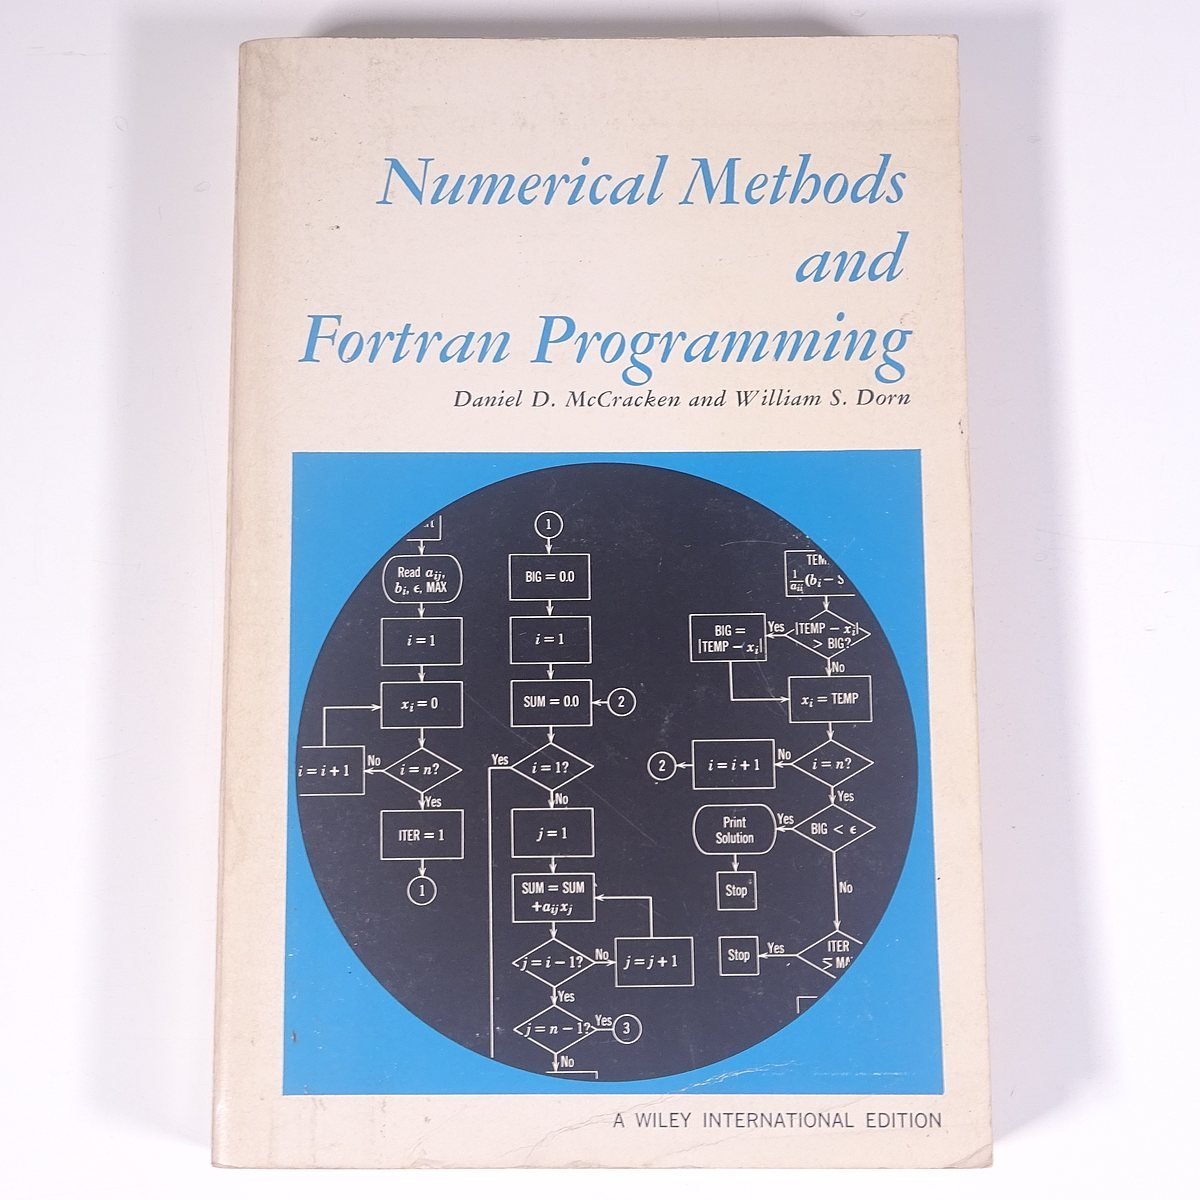 【英語洋書】 Numerical Methods and Fortran Programming 数値計算法とフォートラン・プログラミング 1966 単行本 PC パソコン 数学